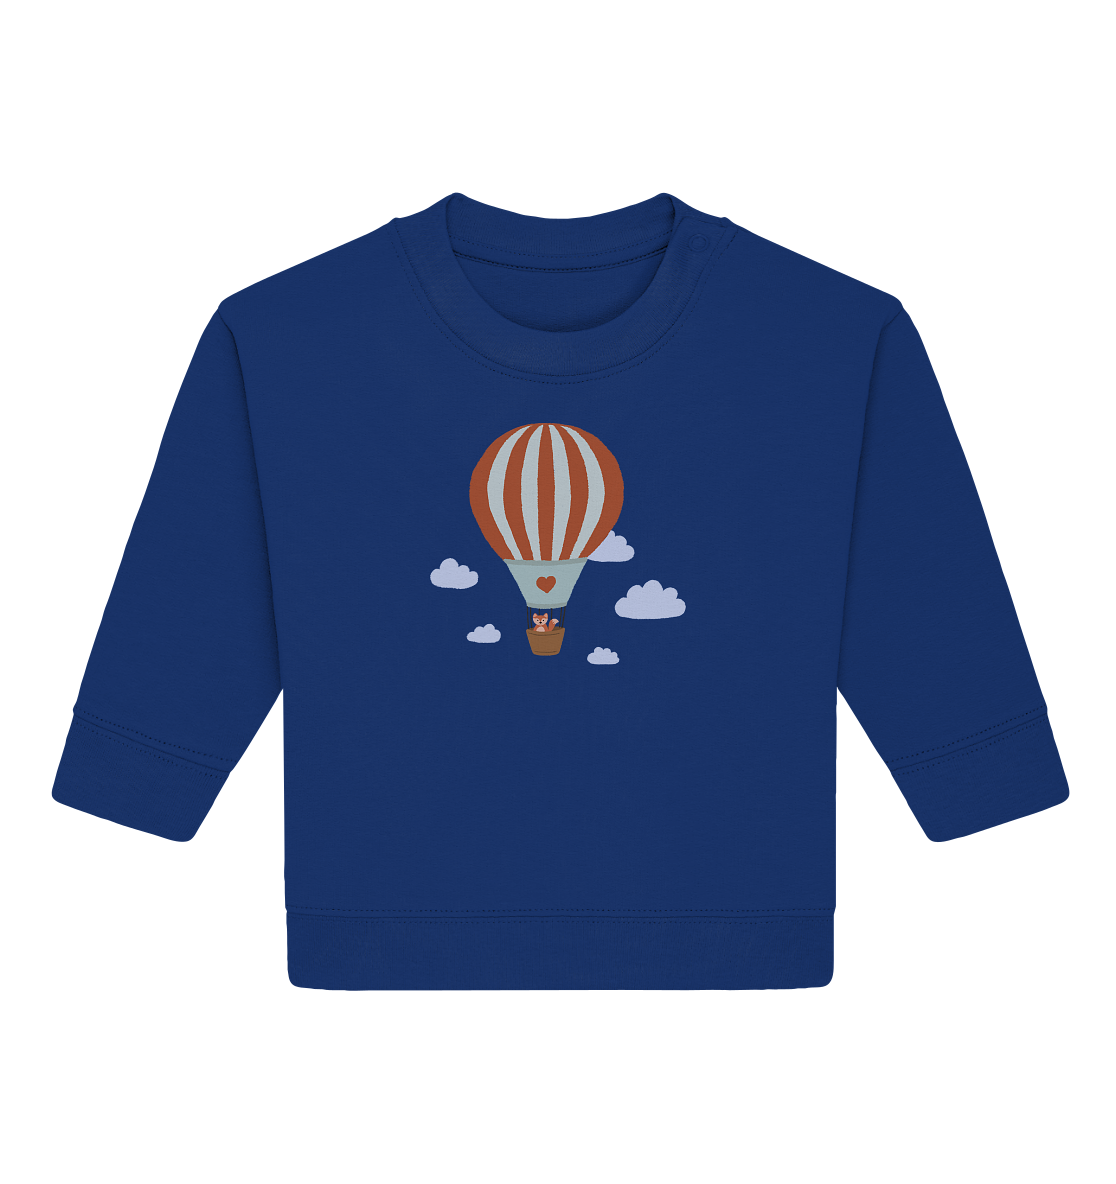 Baby Sweatshirt "Heißluftballon"